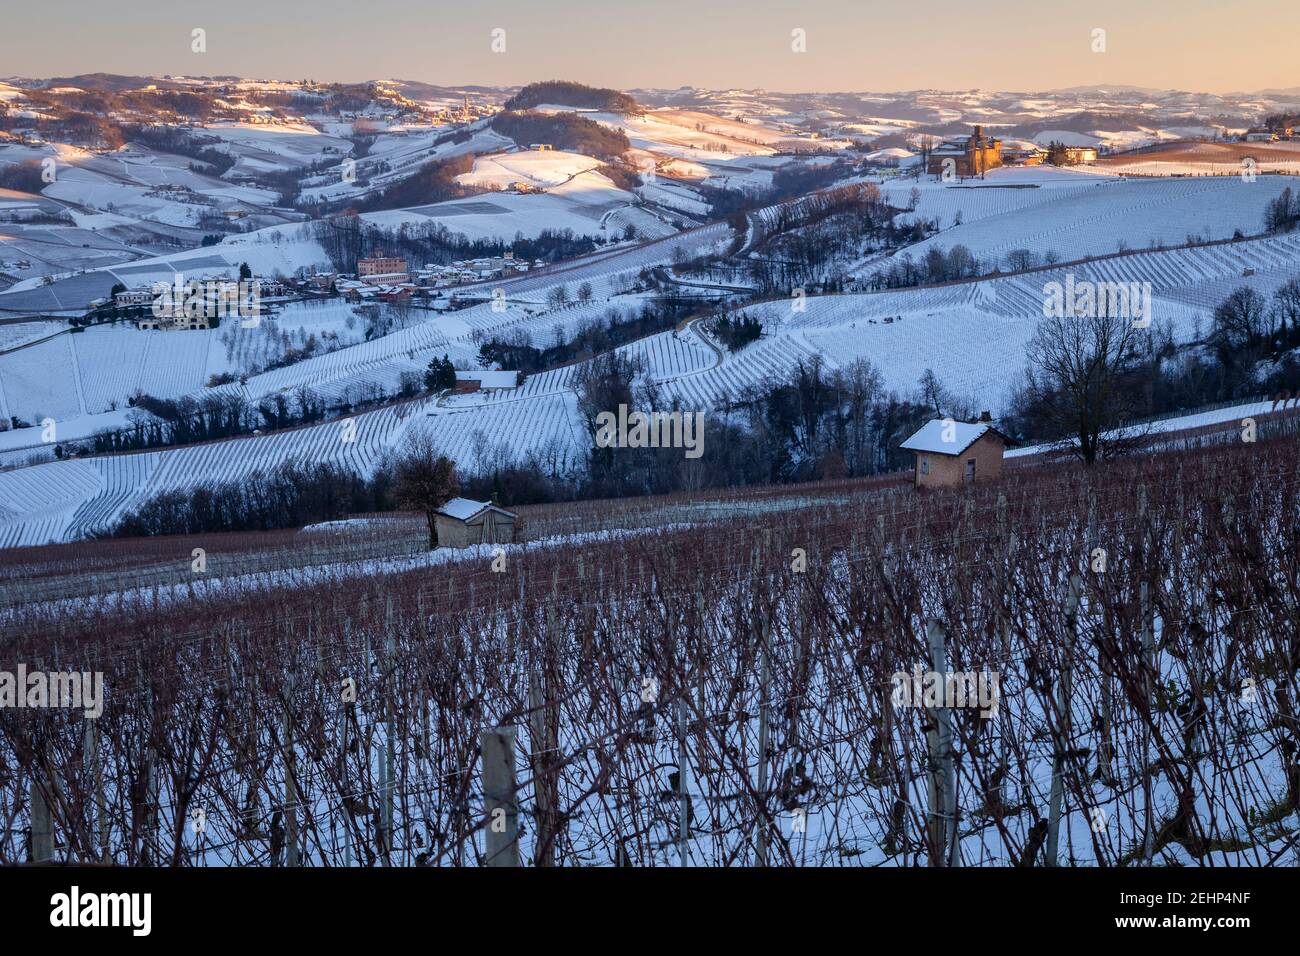 Tramonto sul Castello di la volta in inverno da la Morra. Barolo, regione vinicola Barolo, Langhe, Piemonte, Italia, Europa. Foto Stock